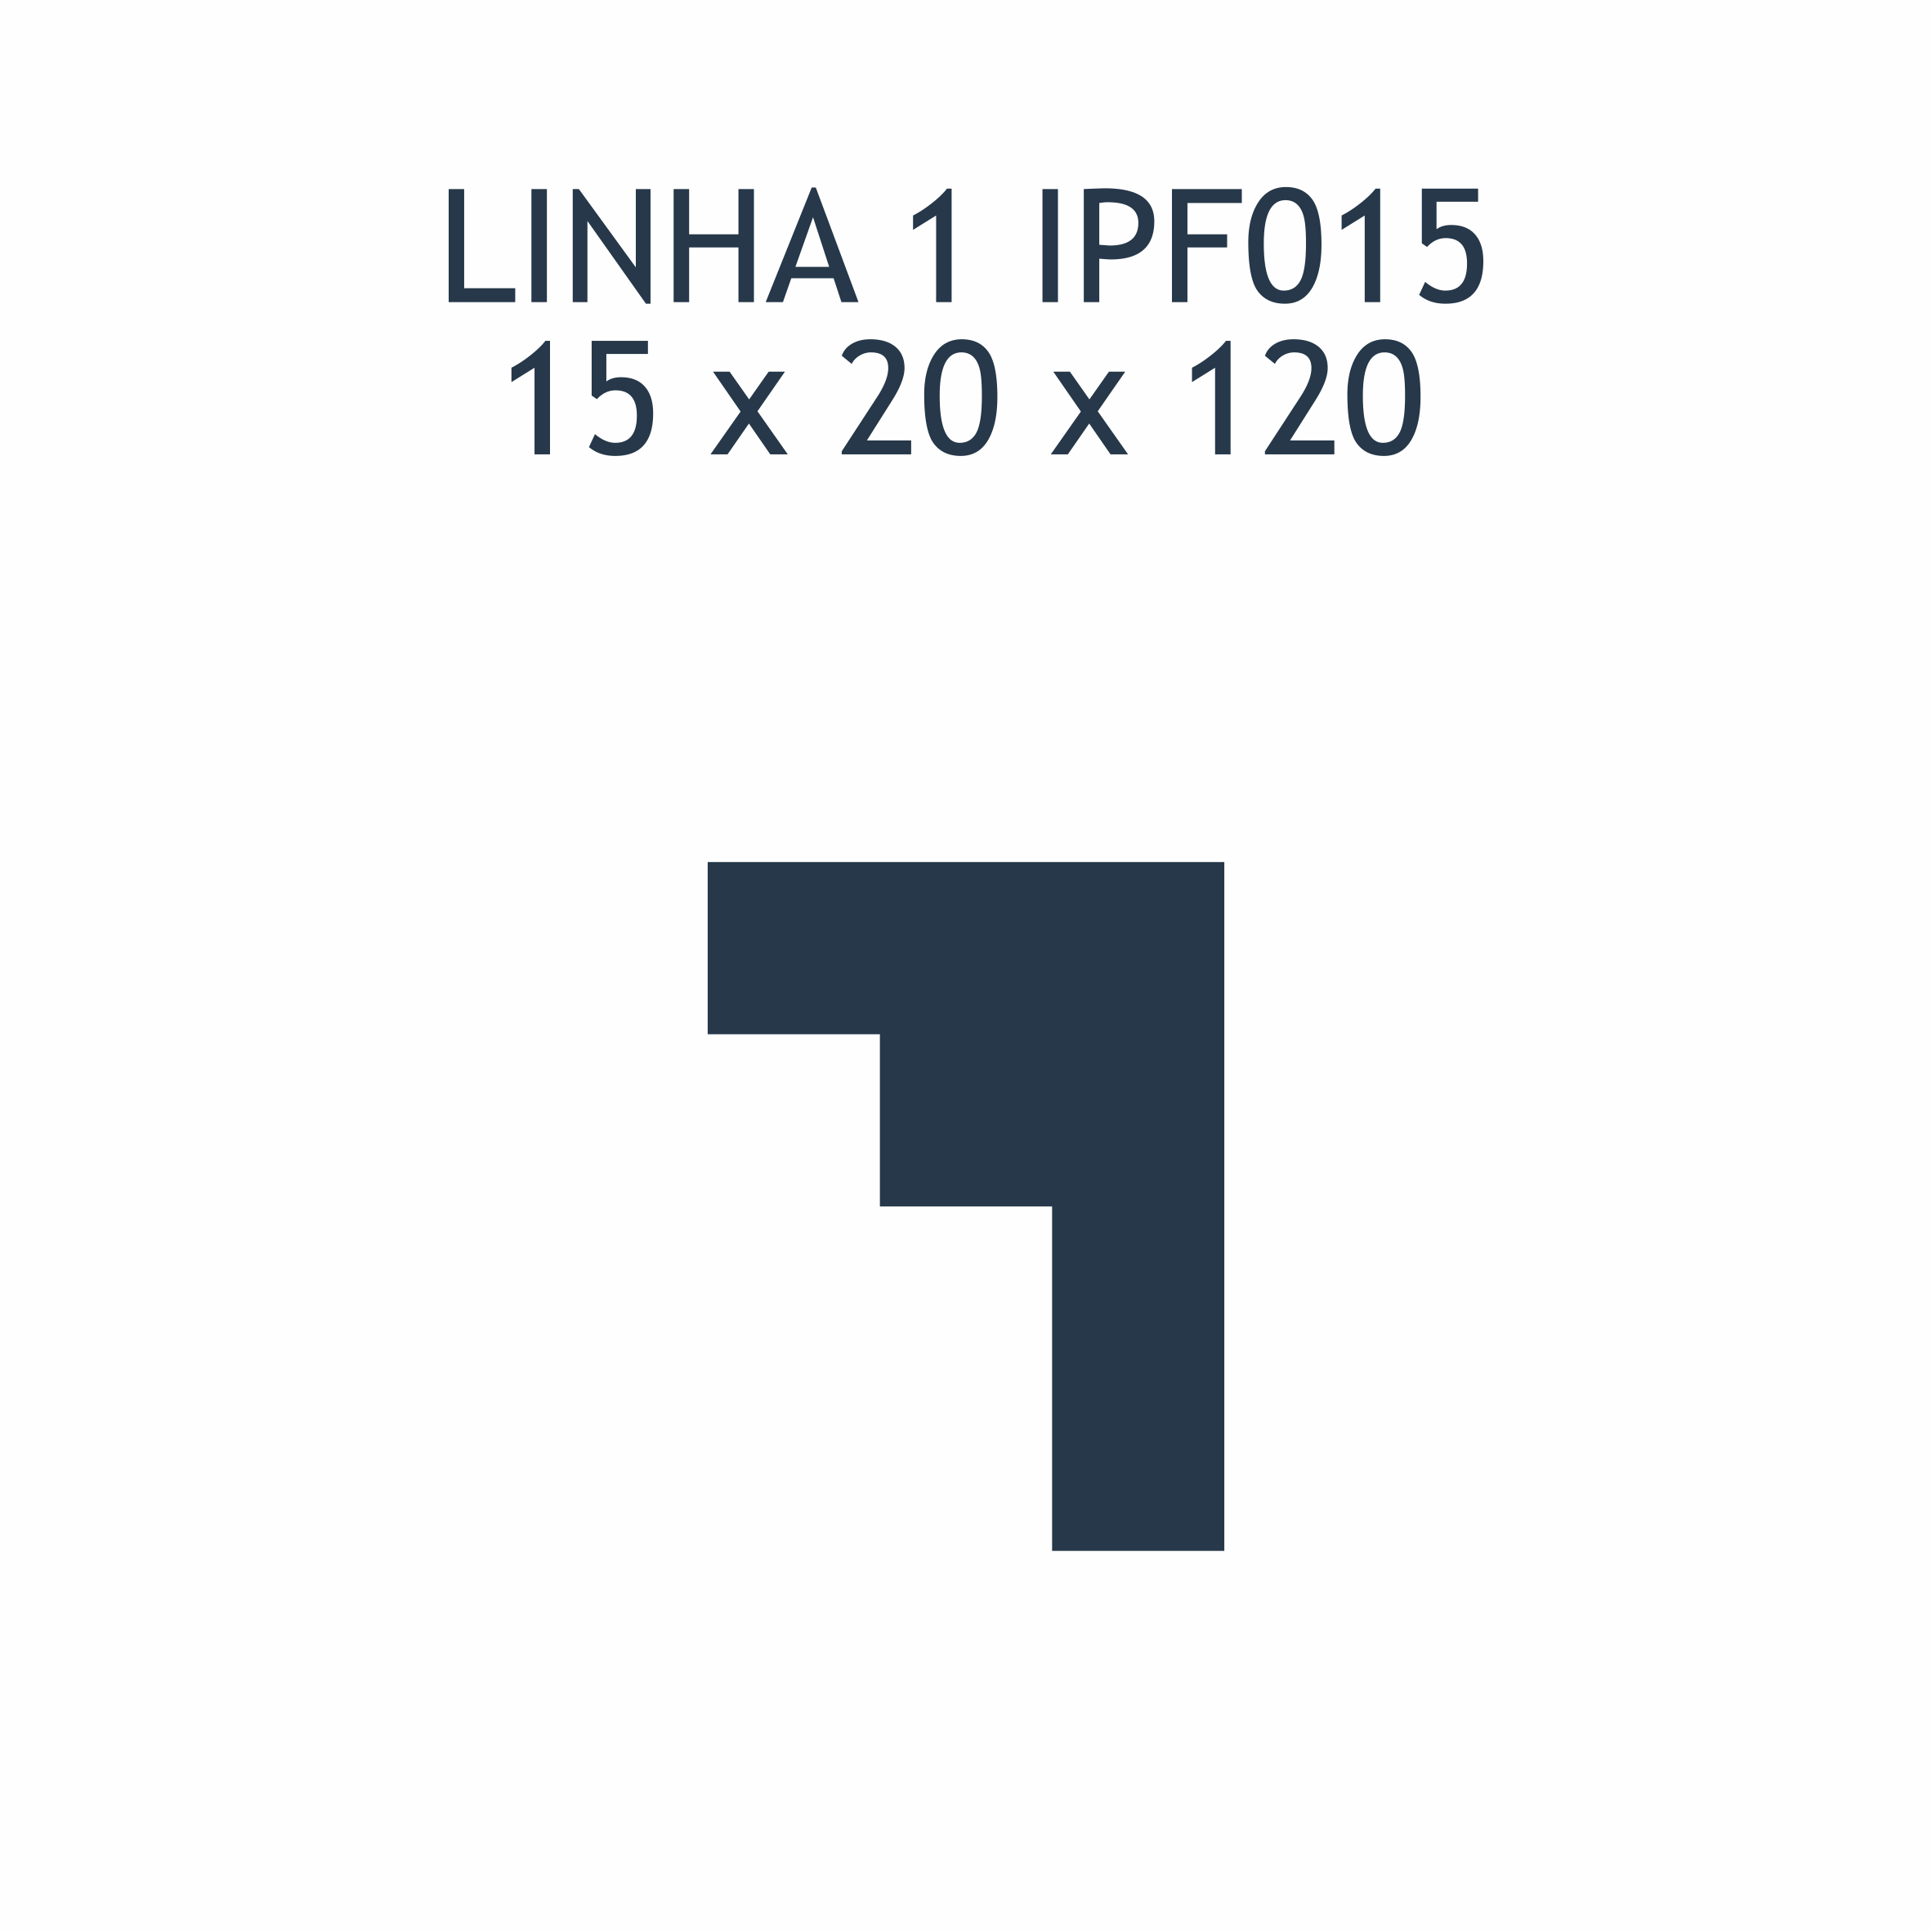 L1 IPF015